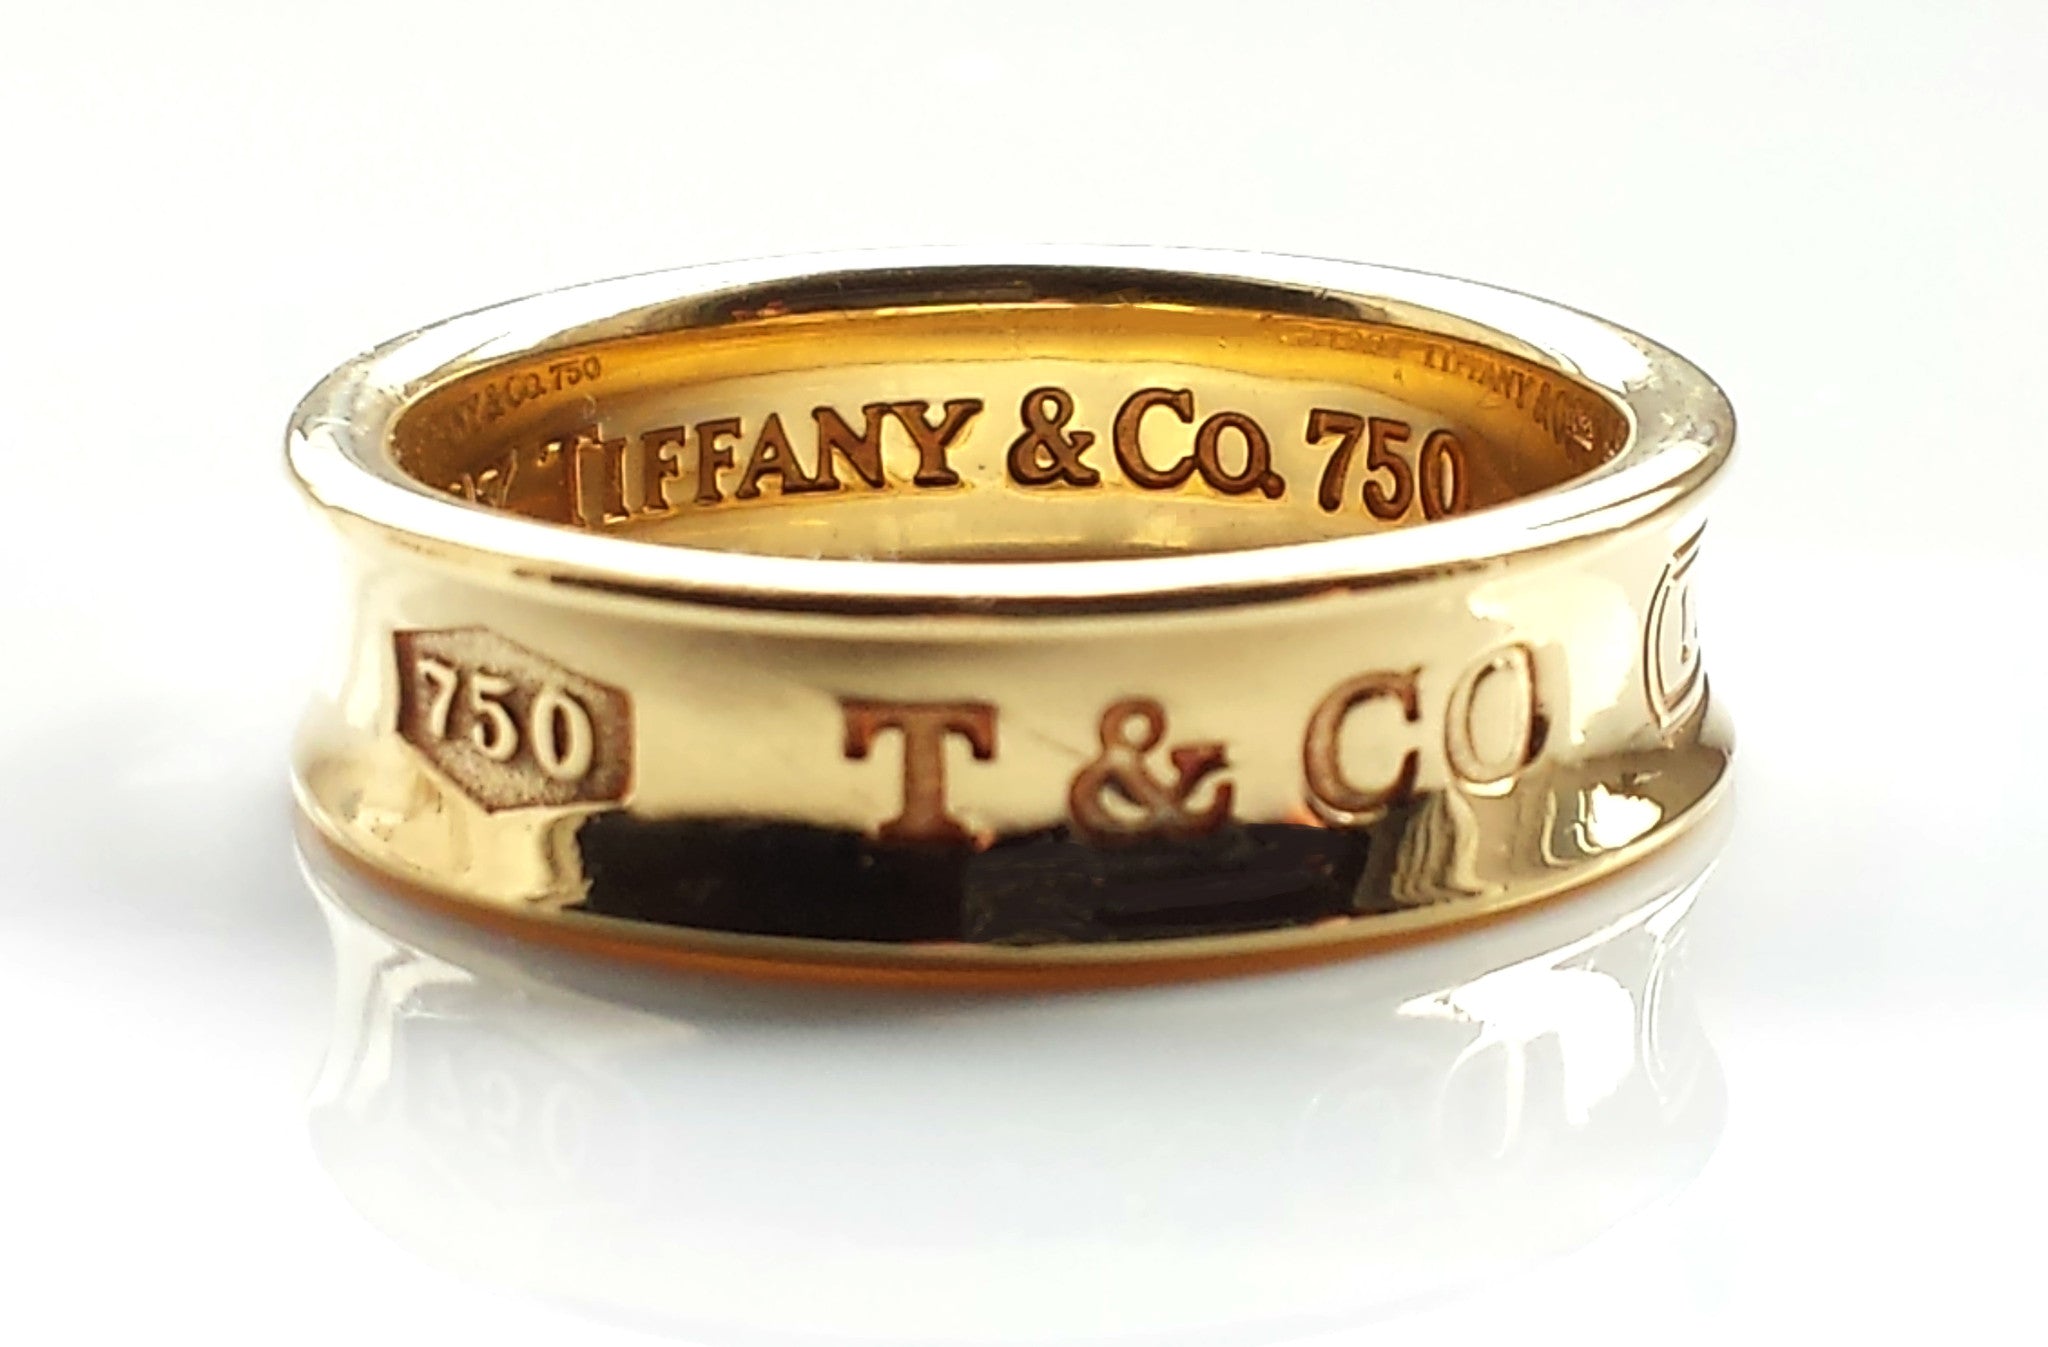 tiffany & co 750 ring